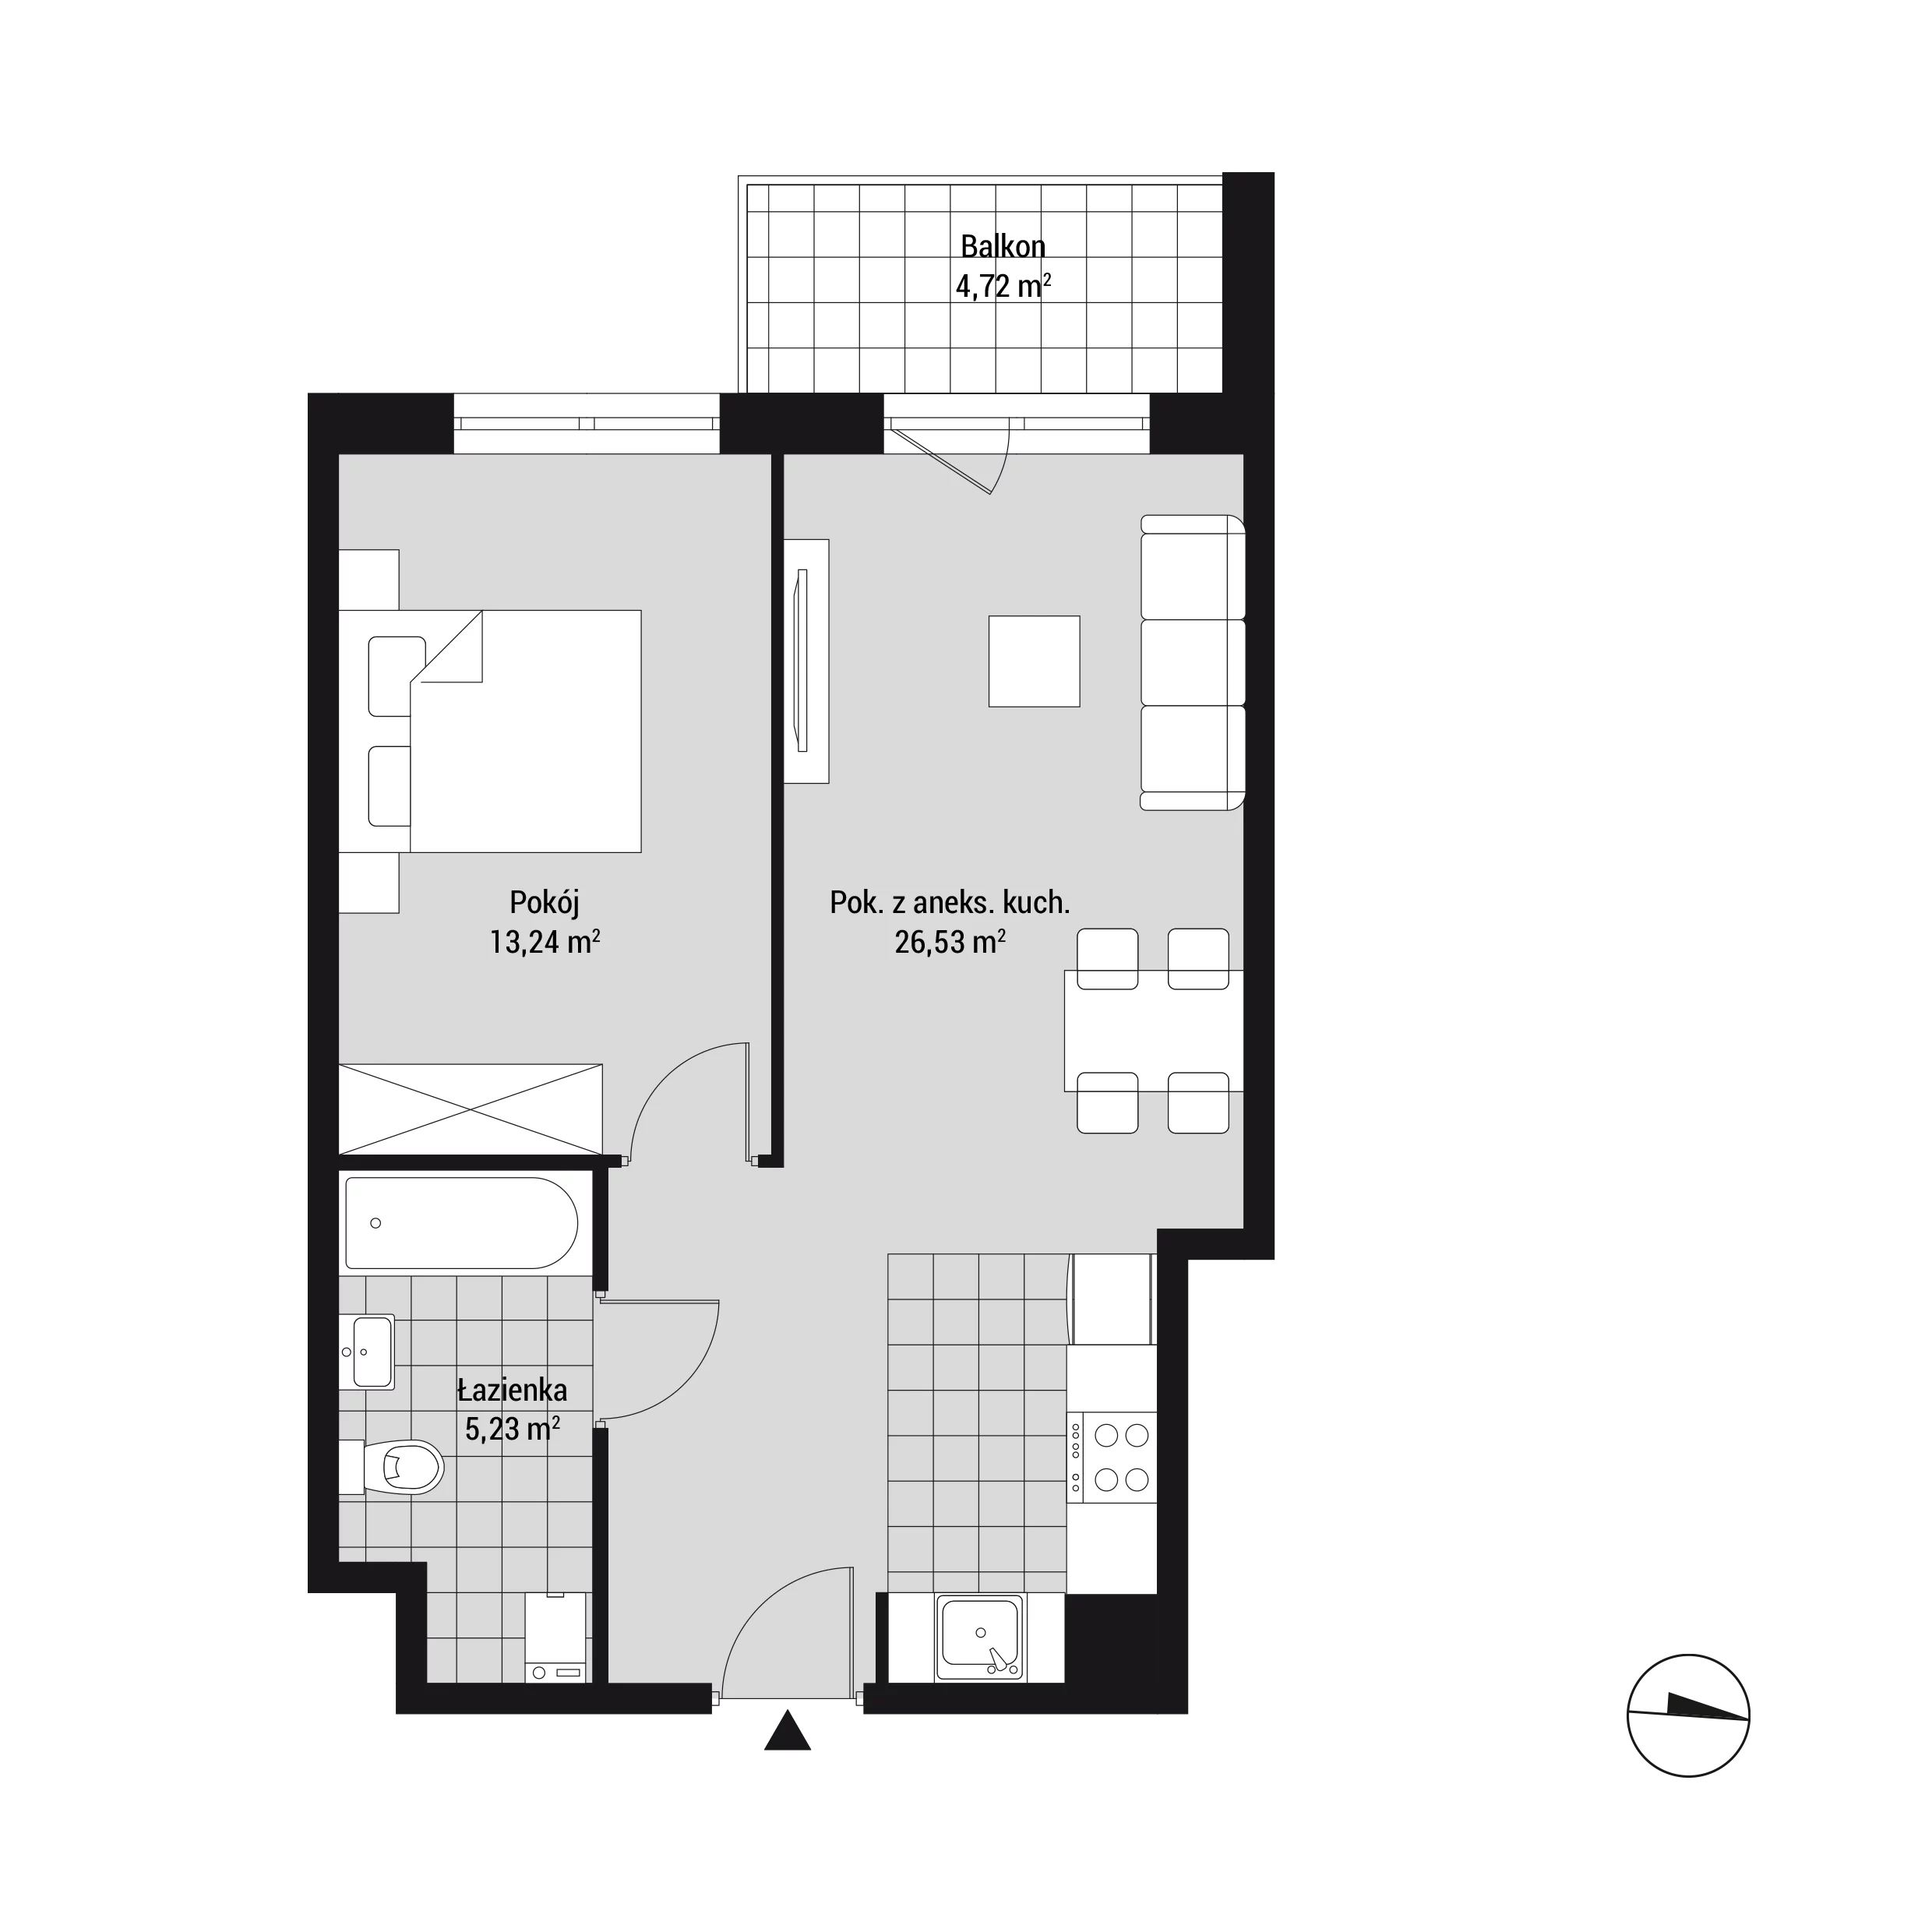 Mieszkanie 45,04 m², piętro 1, oferta nr mieszkanie 22, Na Błonie 106, Kraków, Bronowice, Wola Justowska, ul. Na Błonie 106